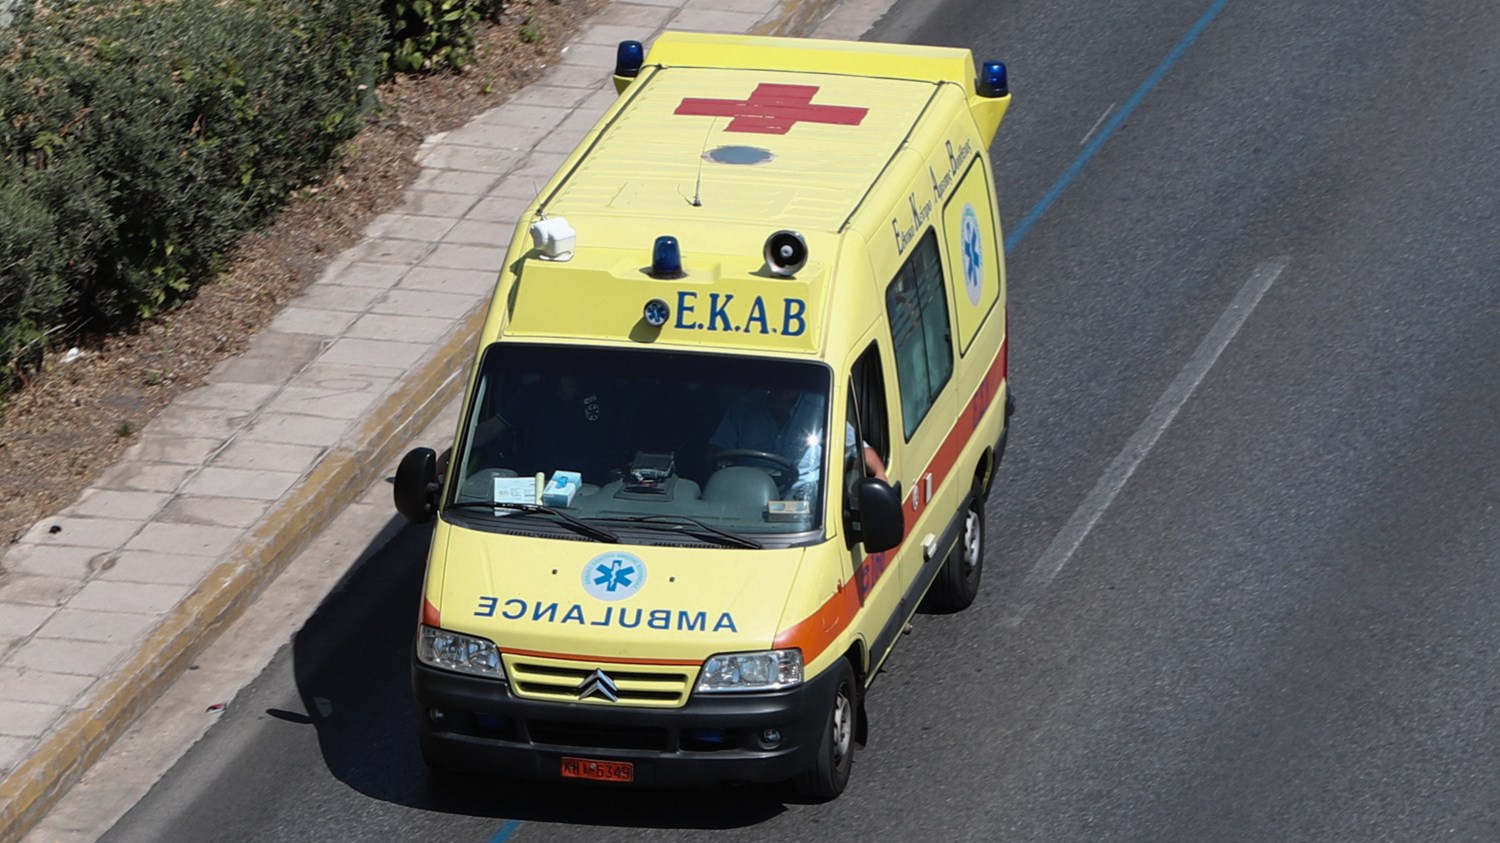 Τραγωδία στην άσφαλτο: Νεκρός 21χρονος σε τροχαίο στη Θεσσαλονίκη